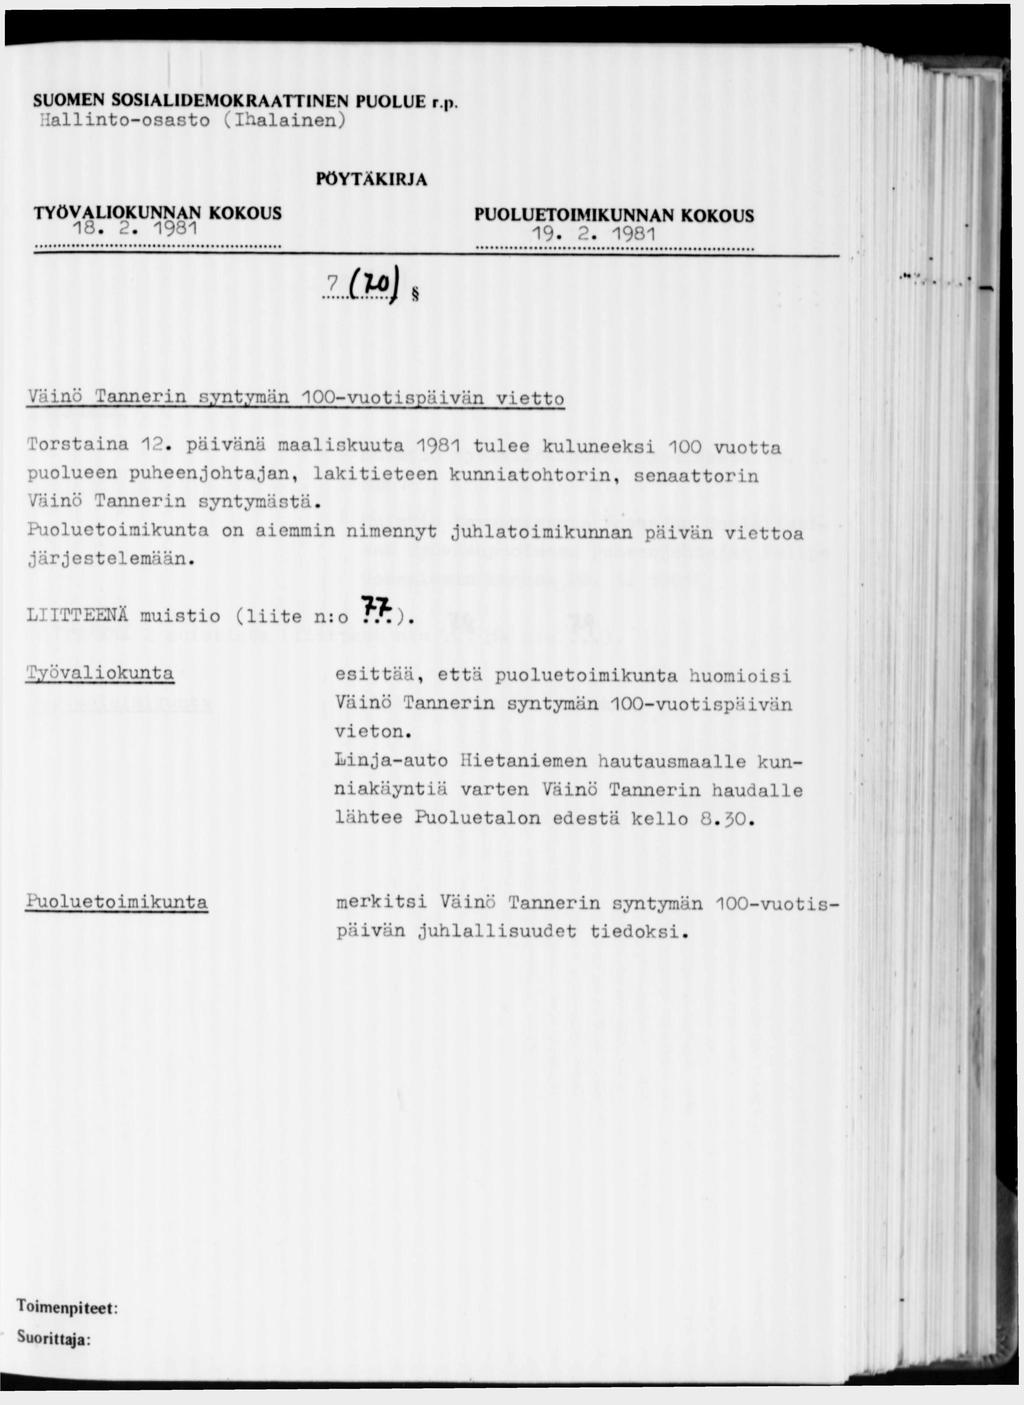 SUOMEN SOSIALIDEMOKRAATTINEN PUOLUE r.p. Hallinto-osasto (Ihalainen) 18. 2. 1981 19. 2. 1981 Väinö Tannerin syntymän 100-vuotispäivän vietto Torstaina 12.